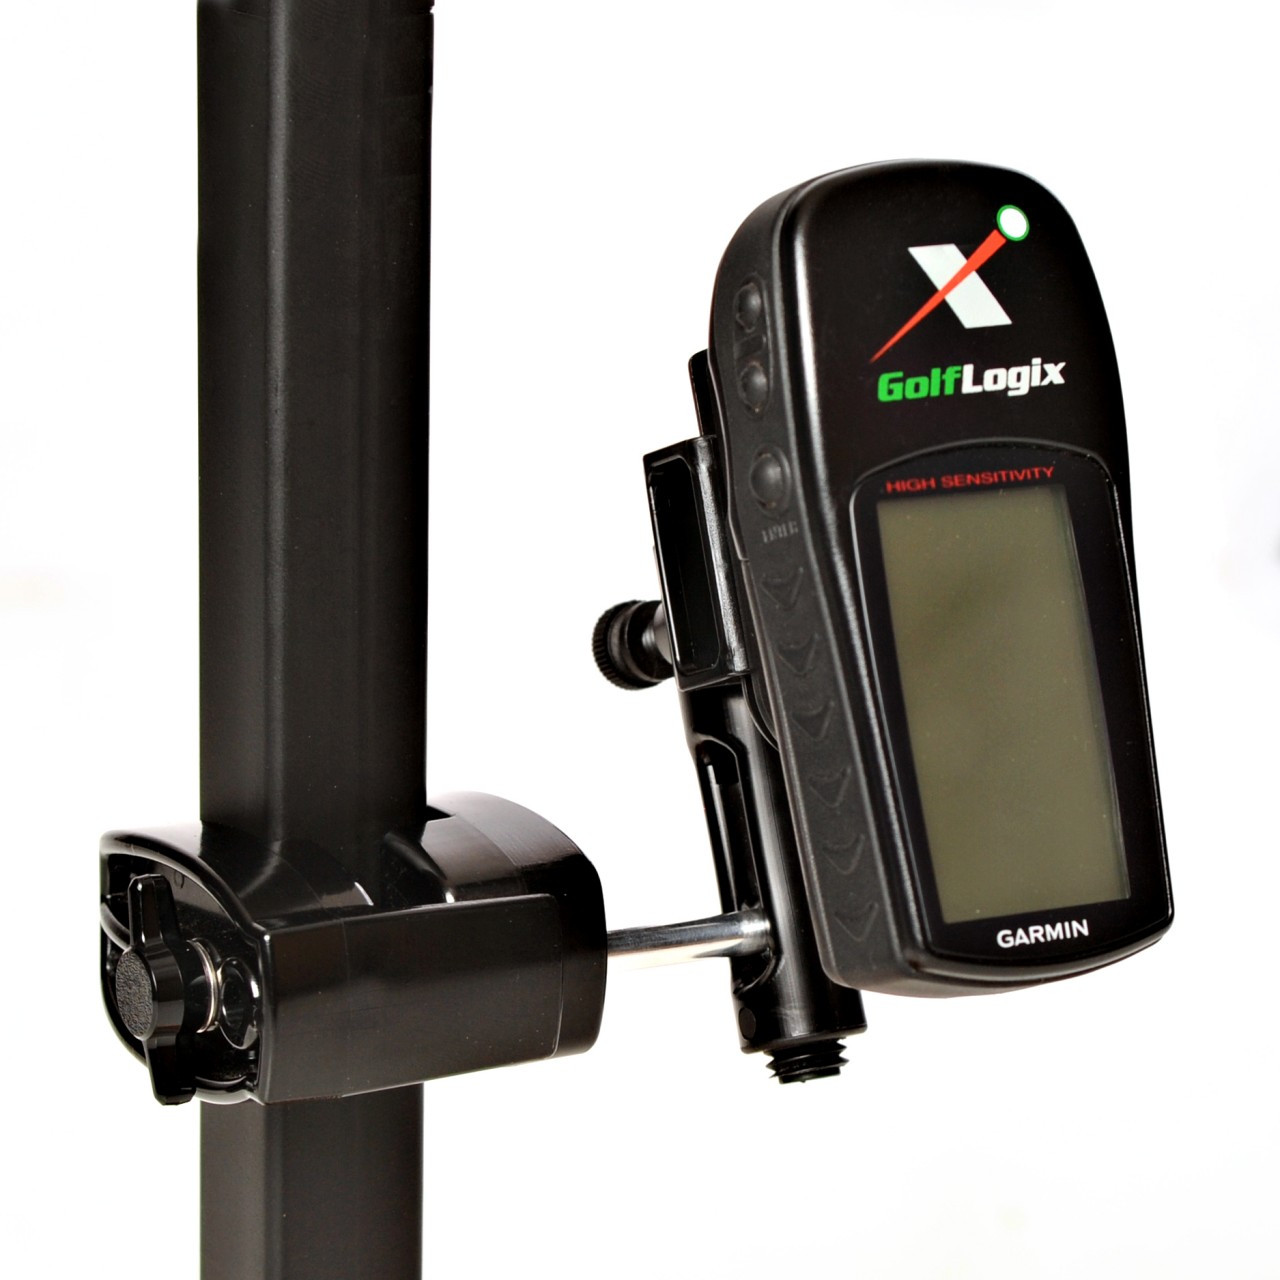 efter skole auroch Lagring Best Garmin GPS Mount | Golf Cart Mount Garmin GPS | Approach, G5, G3, Golf  Logix